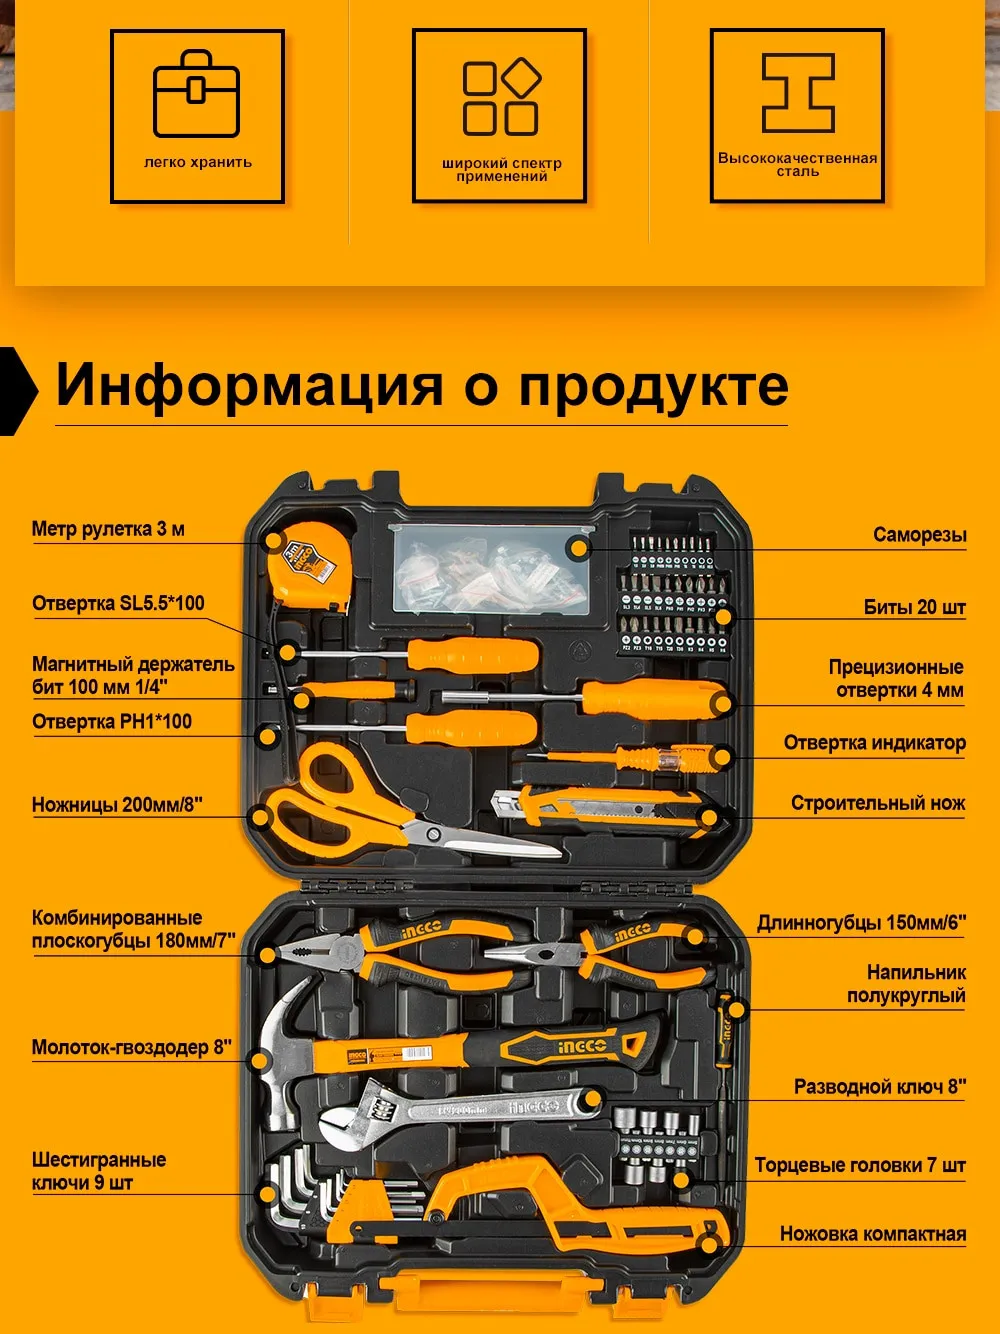 Набор ручных инструментов INGCO, 120 шт., для ежедневного и домашнего использования#2